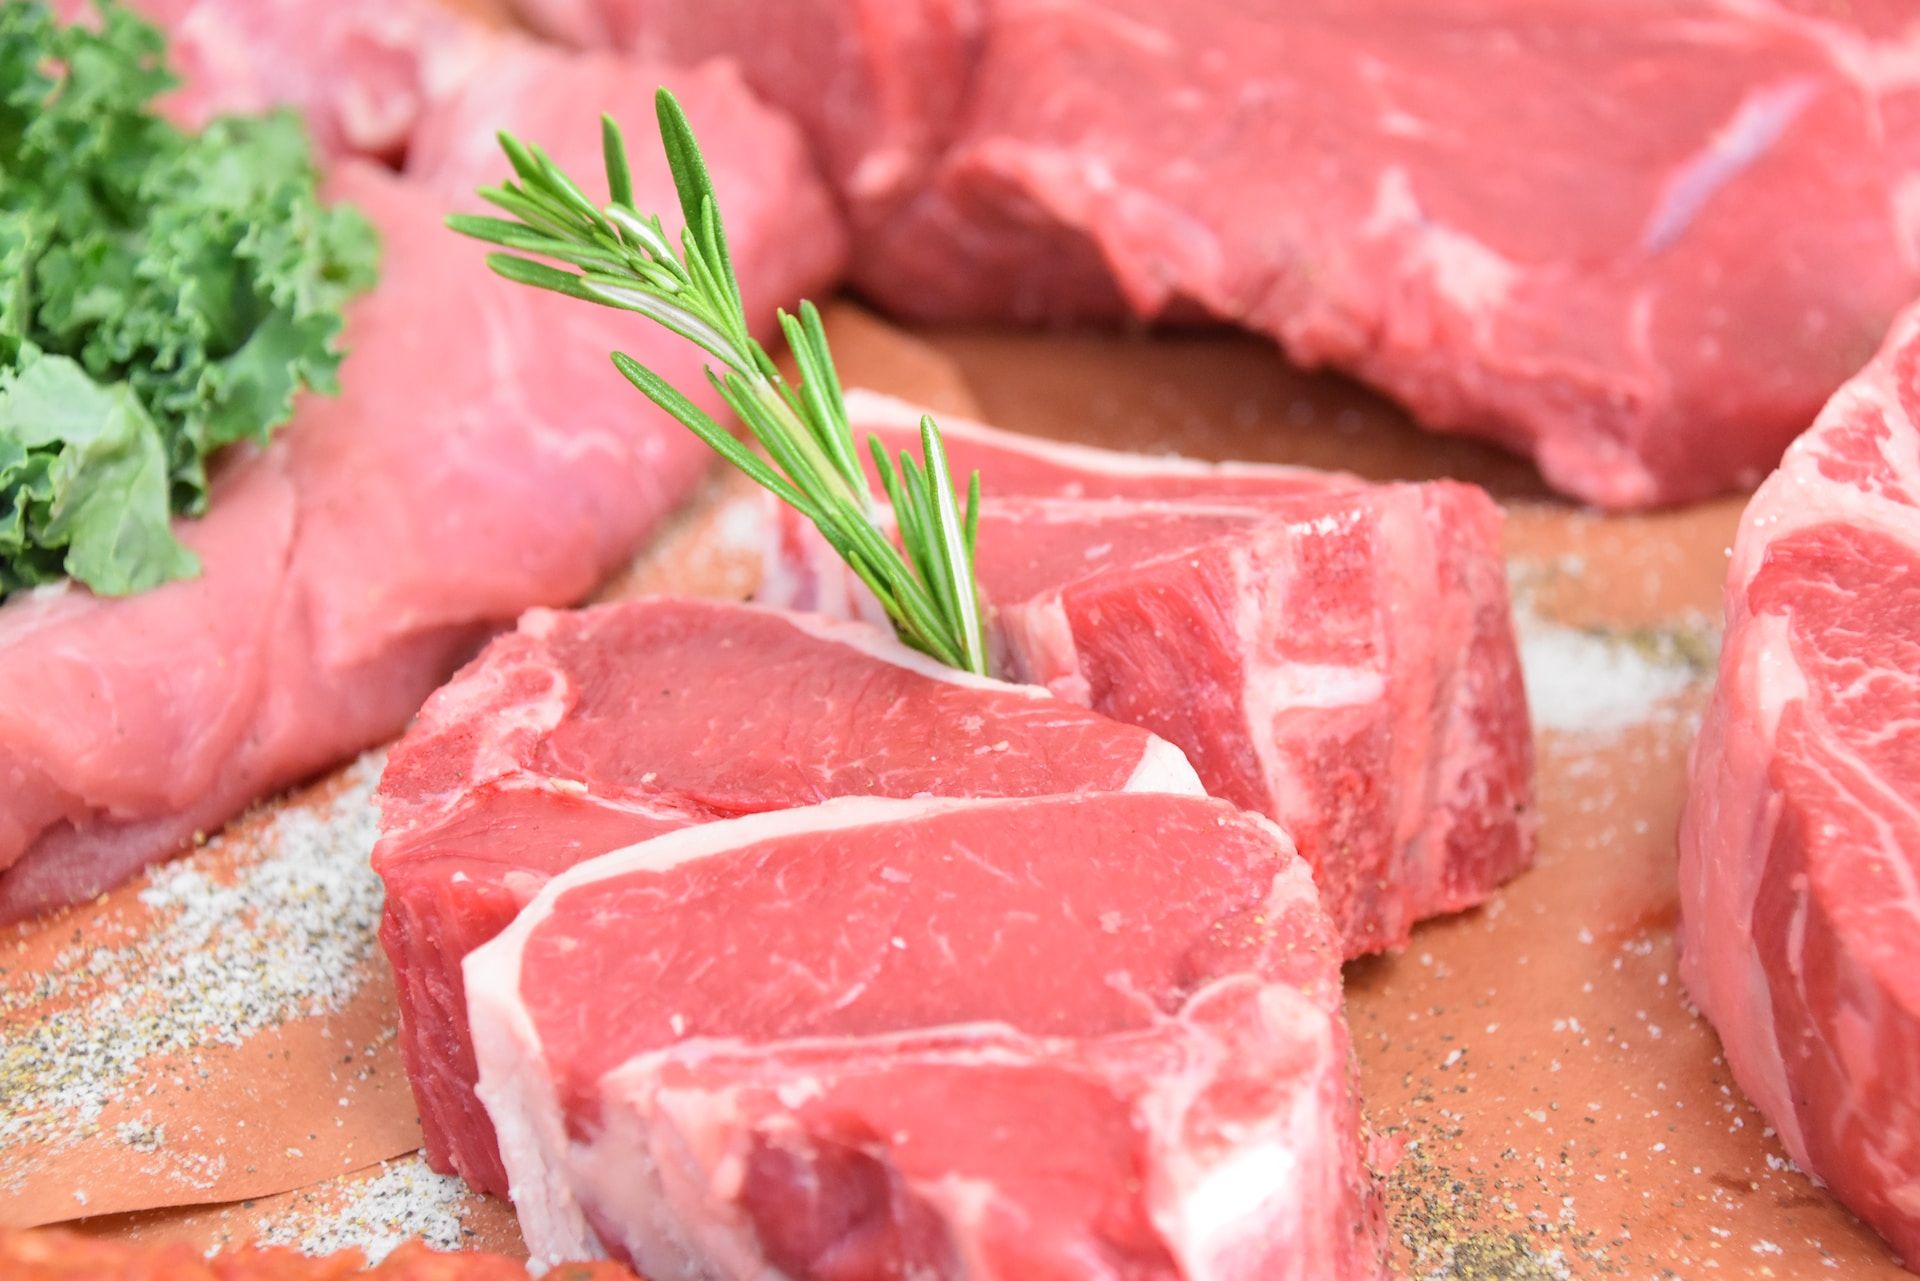 Europejski kraj chce zakazać sprzedaży mięsa z laboratorium